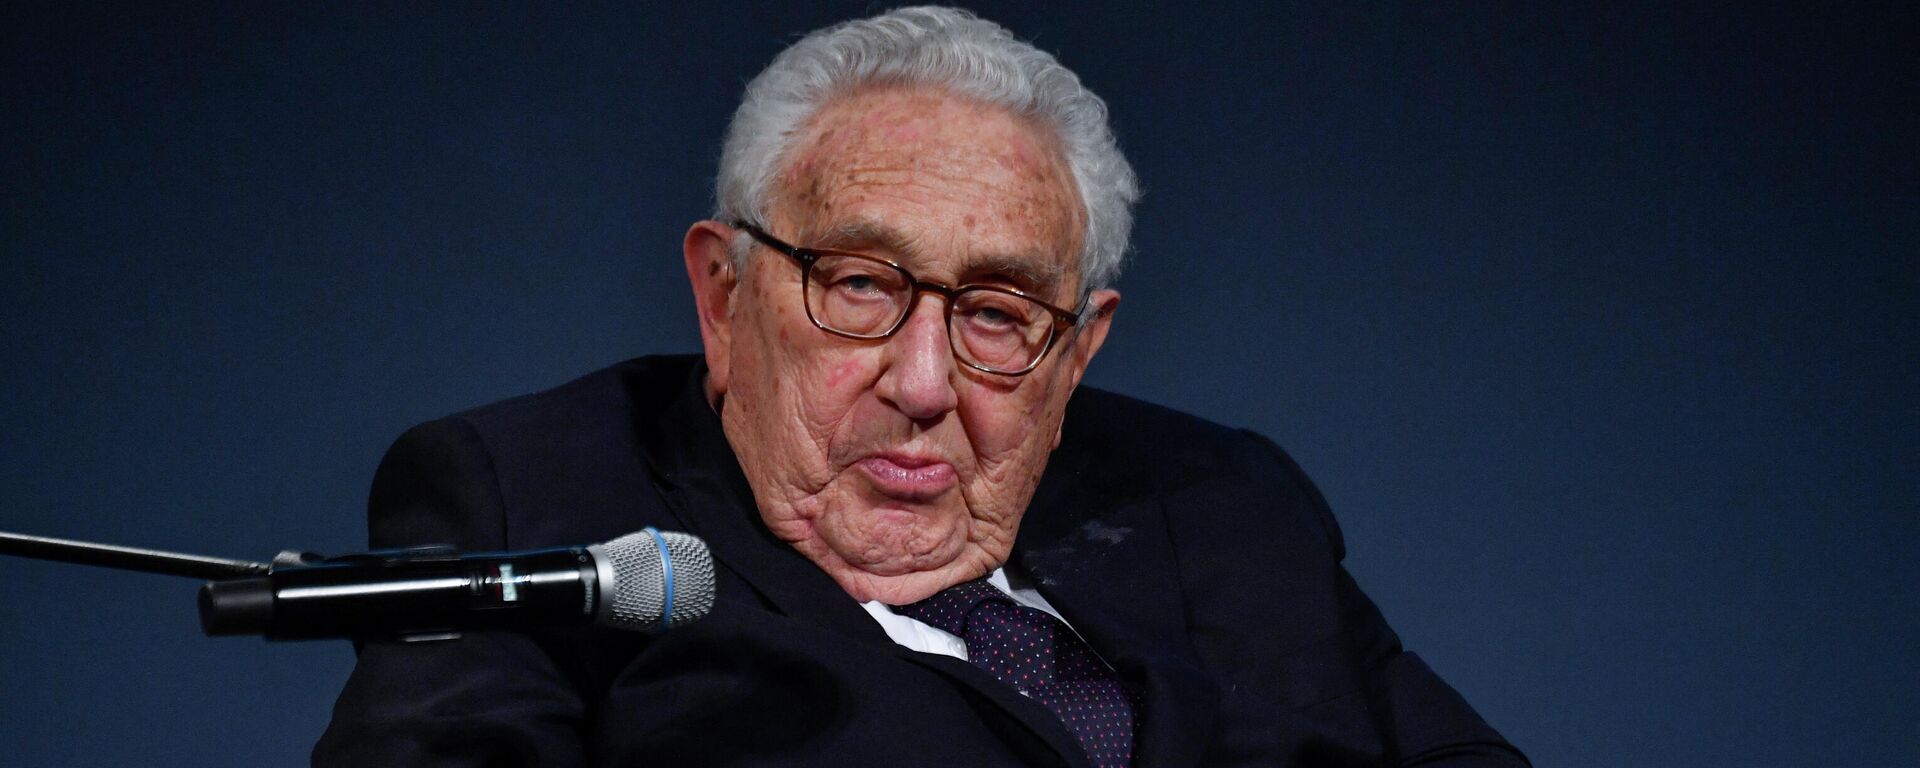 Henry Kissinger, exsecretario de Estado de EEUU  - Sputnik Mundo, 1920, 03.05.2021